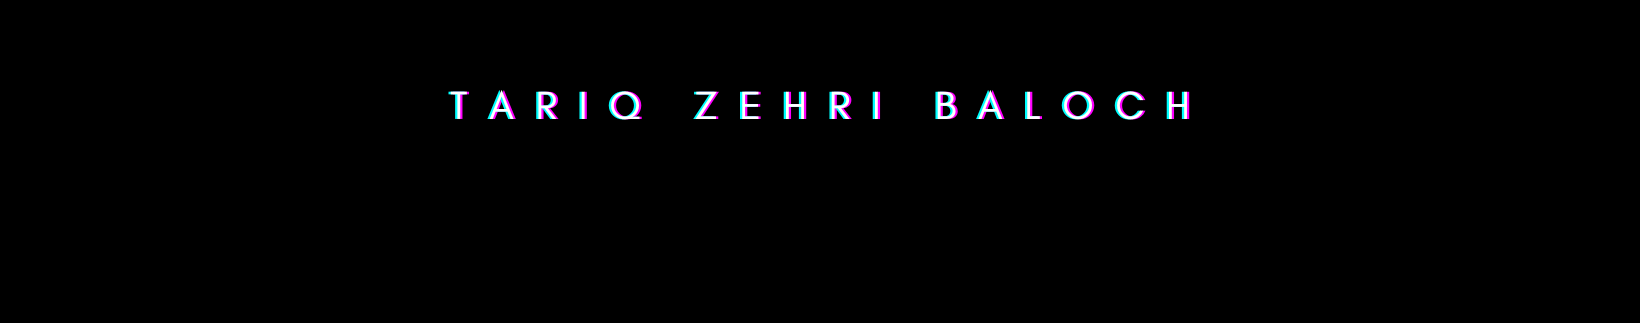 Bannière de profil de Tariq Zehri Baloch